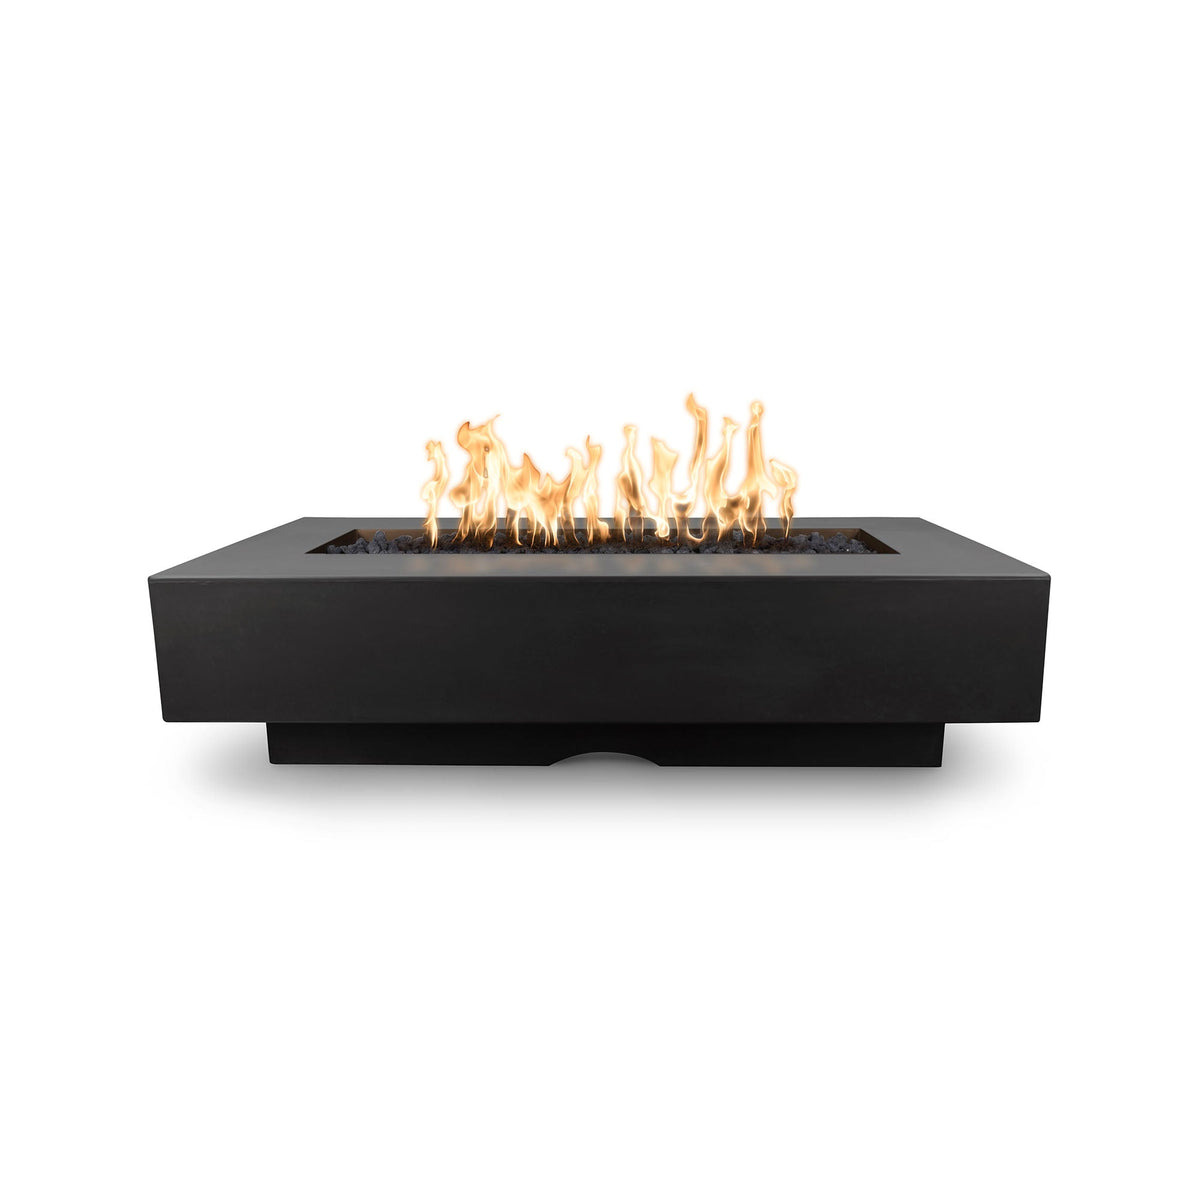 The Outdoor Plus 48&quot; Del Mar GFRC Concrete Rectangle Fire Pit Table in Black